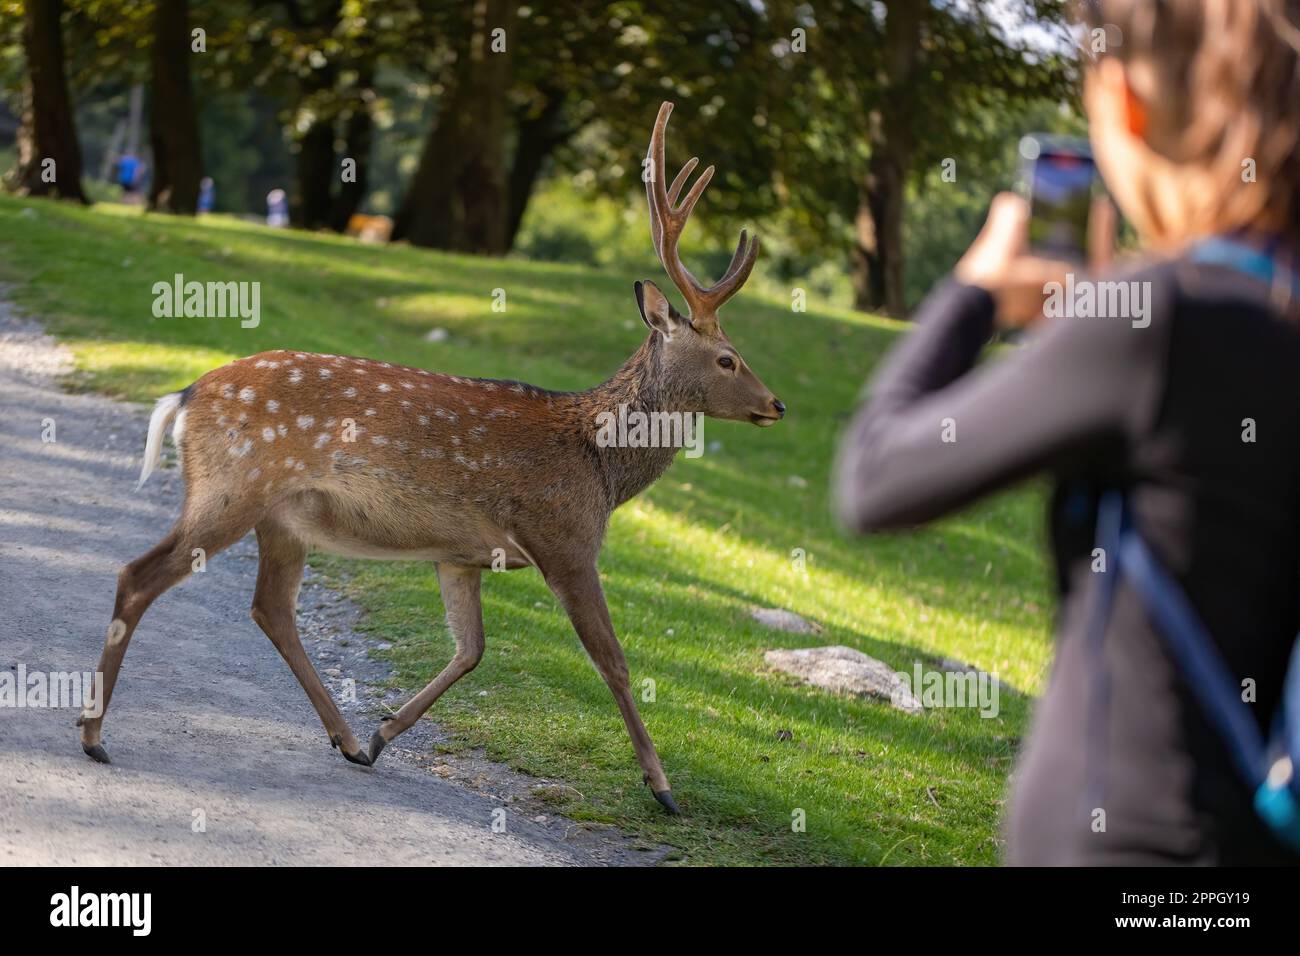 Weibliche Touristin fotografiert am Telefon sika-Hirsche, die vor ihr laufen Stockfoto